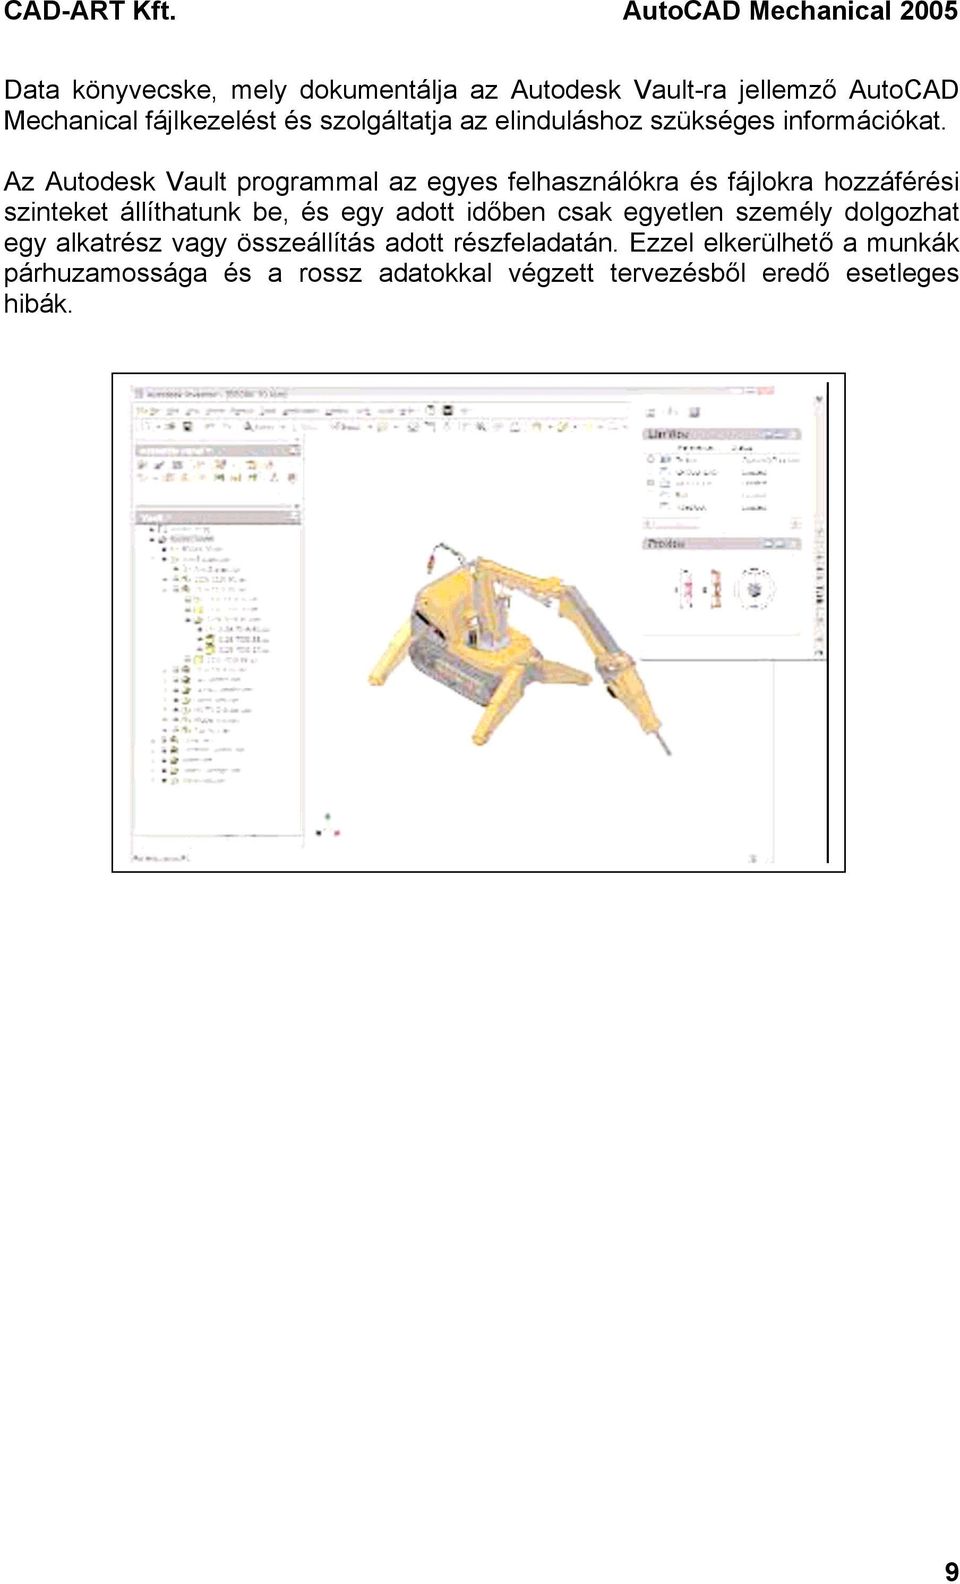 AutoCAD Mechanical Termékismertető - PDF Ingyenes letöltés